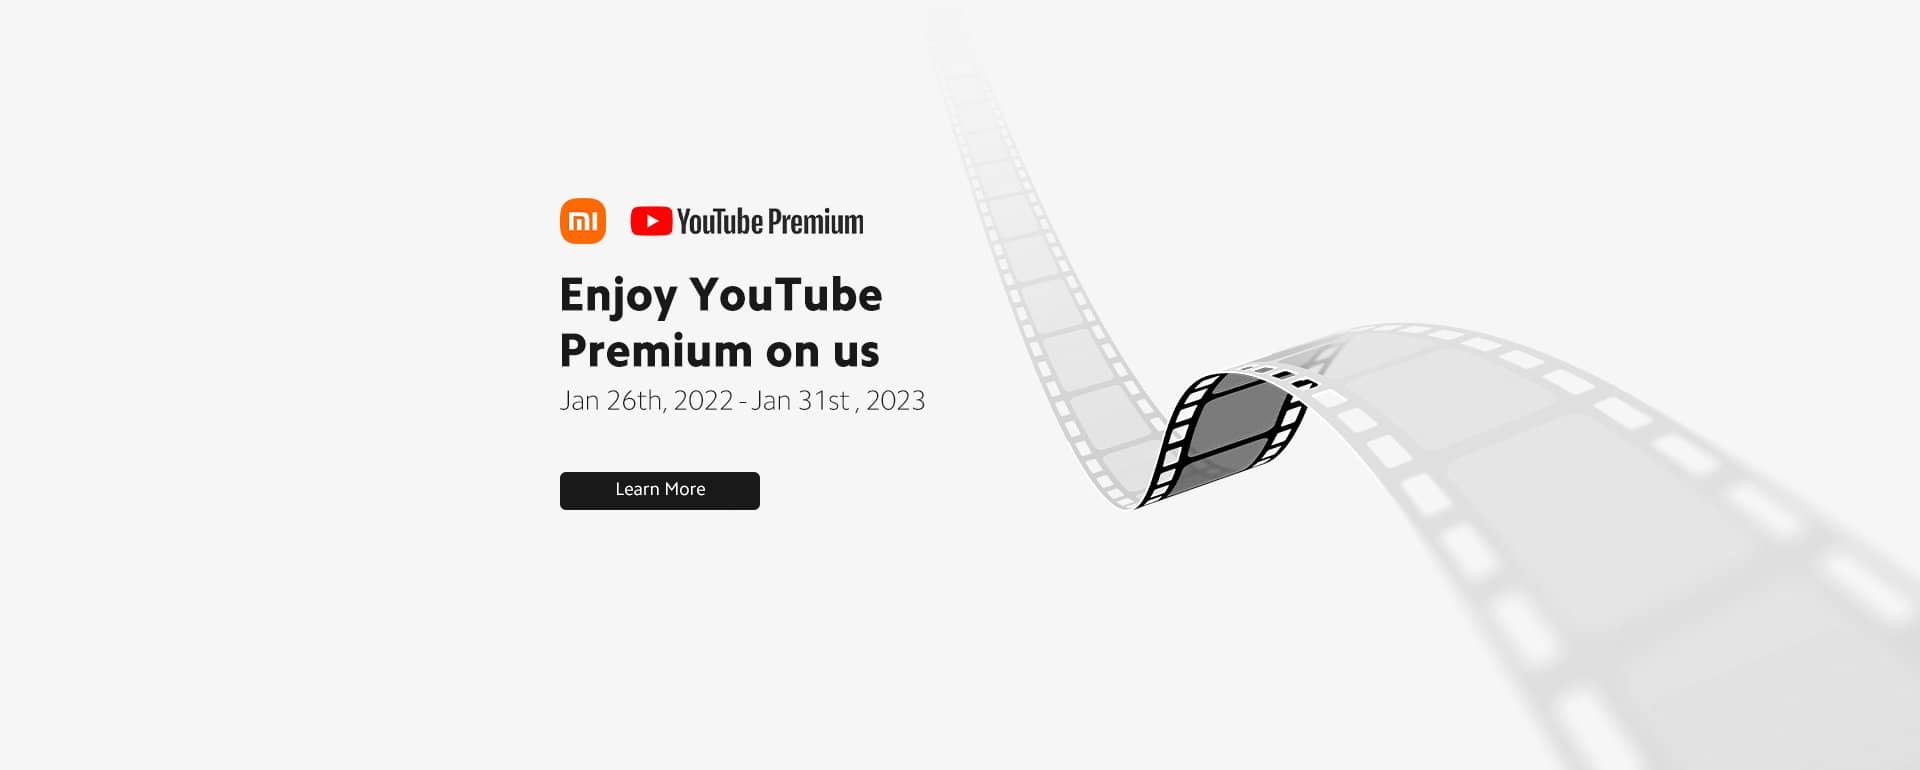 کدام گوشی های شیائومی اکانت YouTube Premium را دریافت میکنند؟